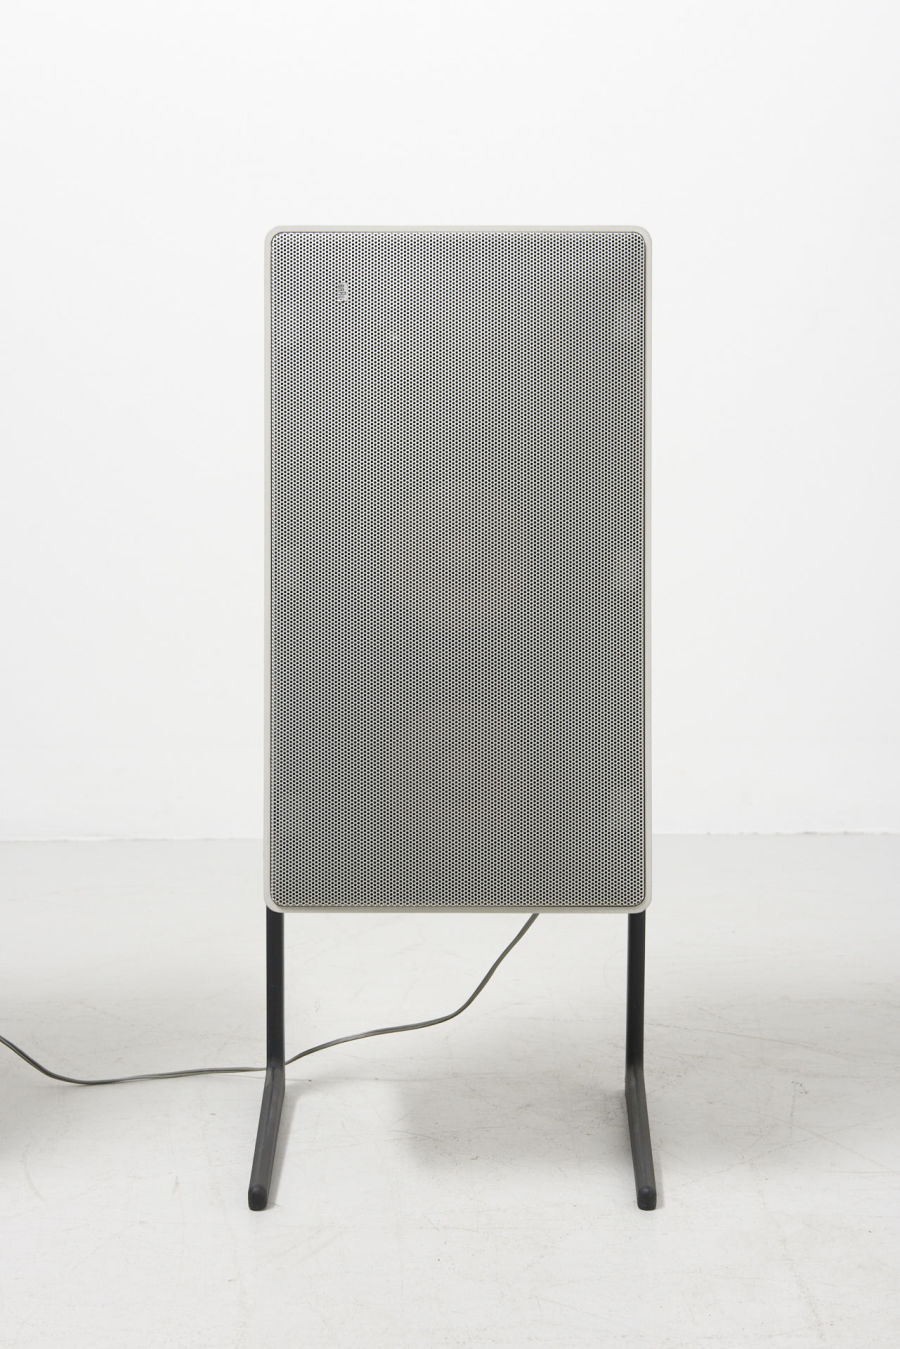 modestfurniture-vintage-2744-dieter-rams-speakers-braun02